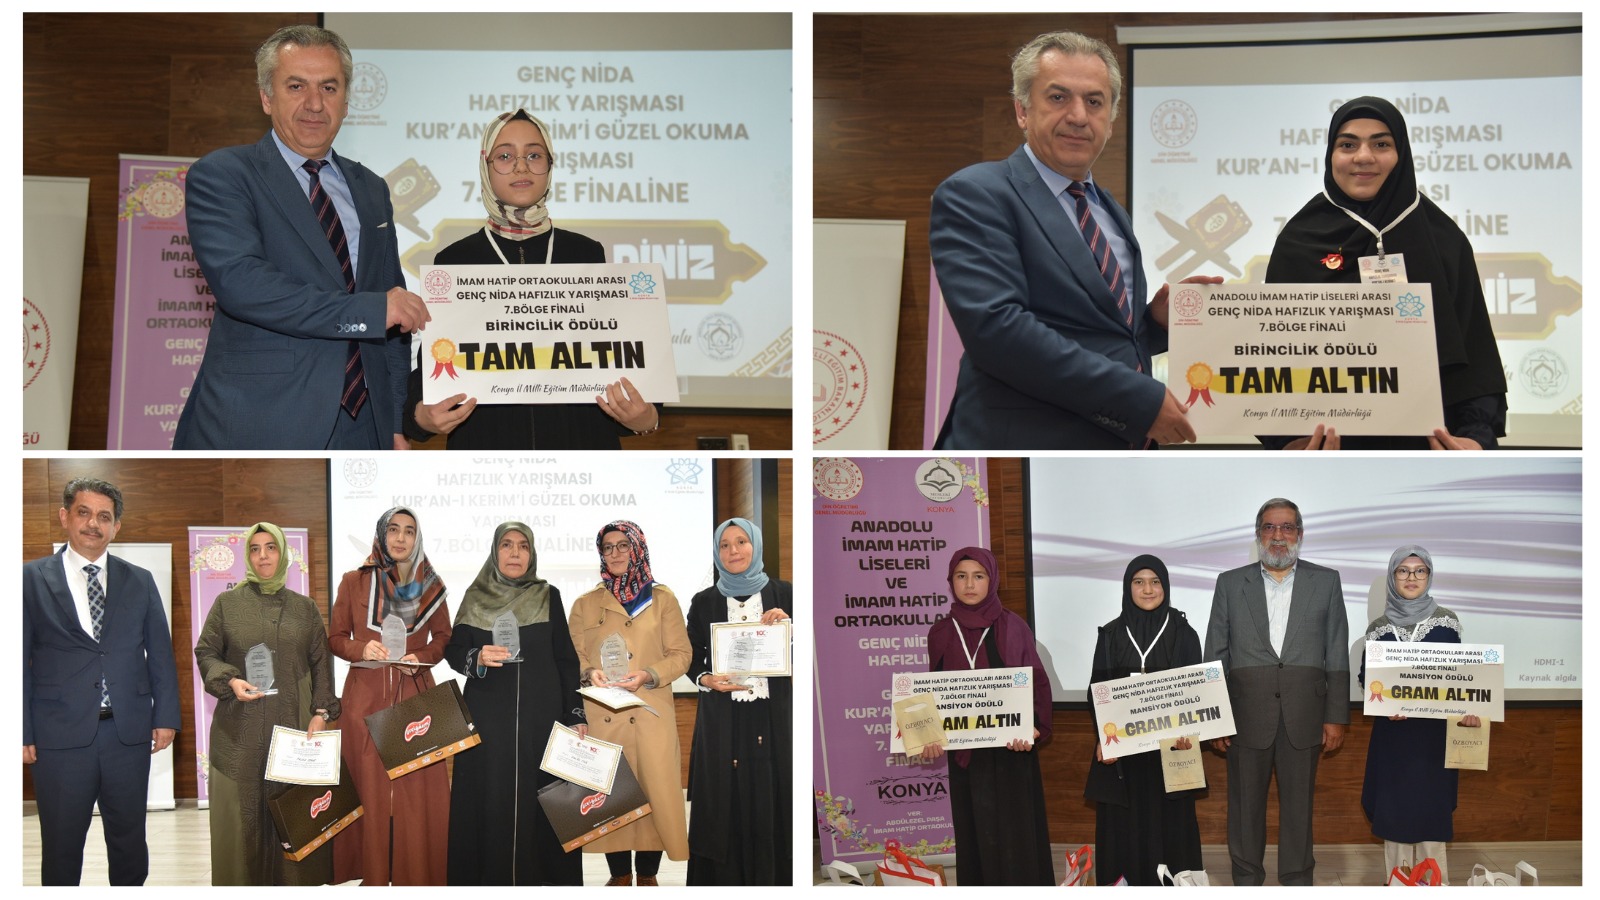 Genç Nida Hafızlık  yarışması finali Konya’da gerçekleşti